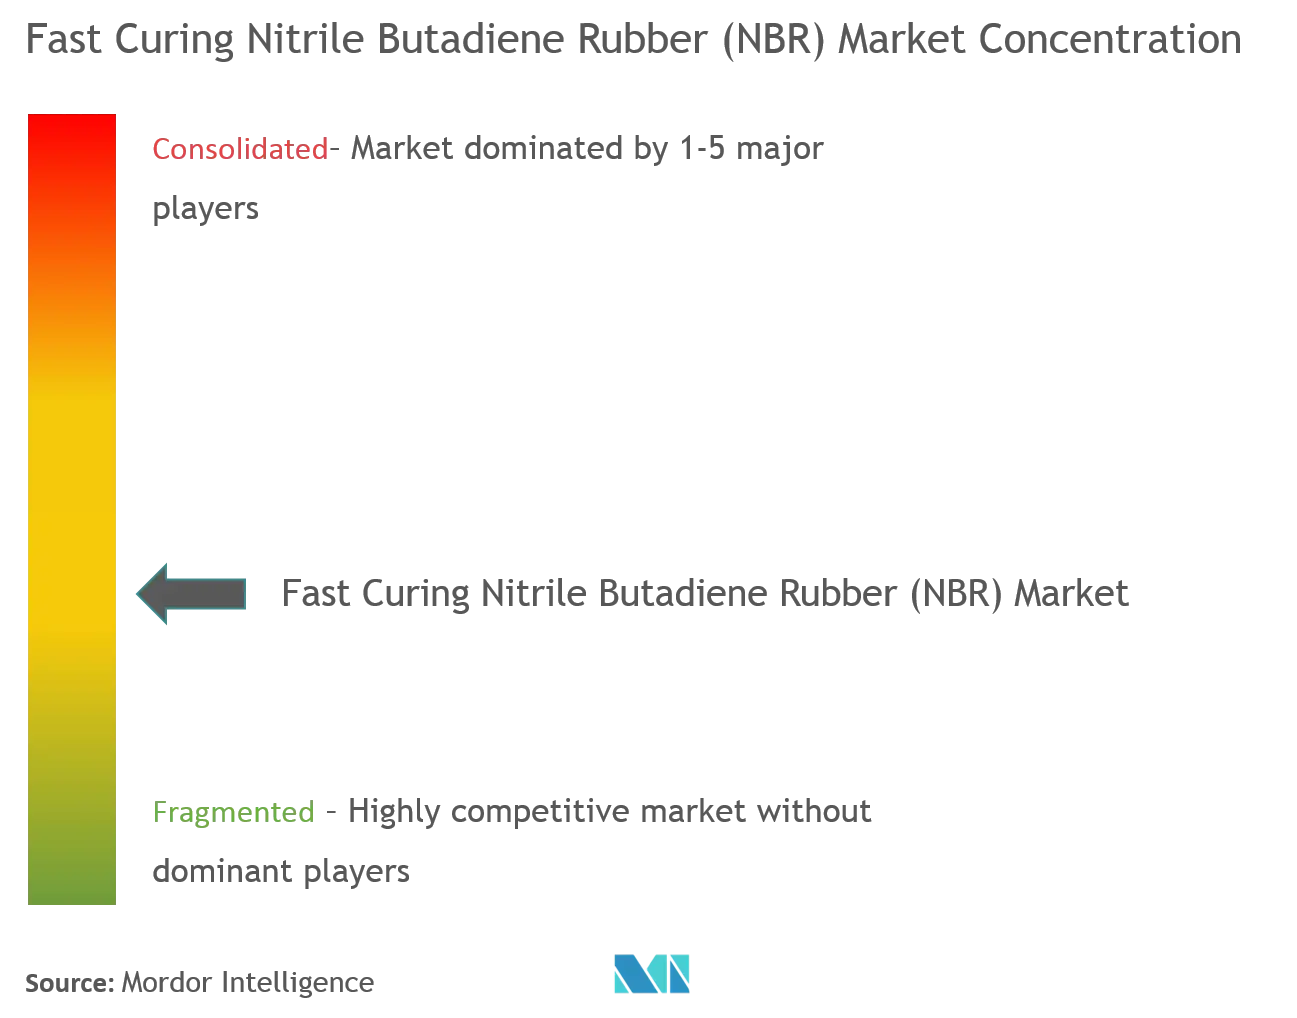 Caoutchouc nitrile butadiène (NBR) à durcissement rapideConcentration du marché